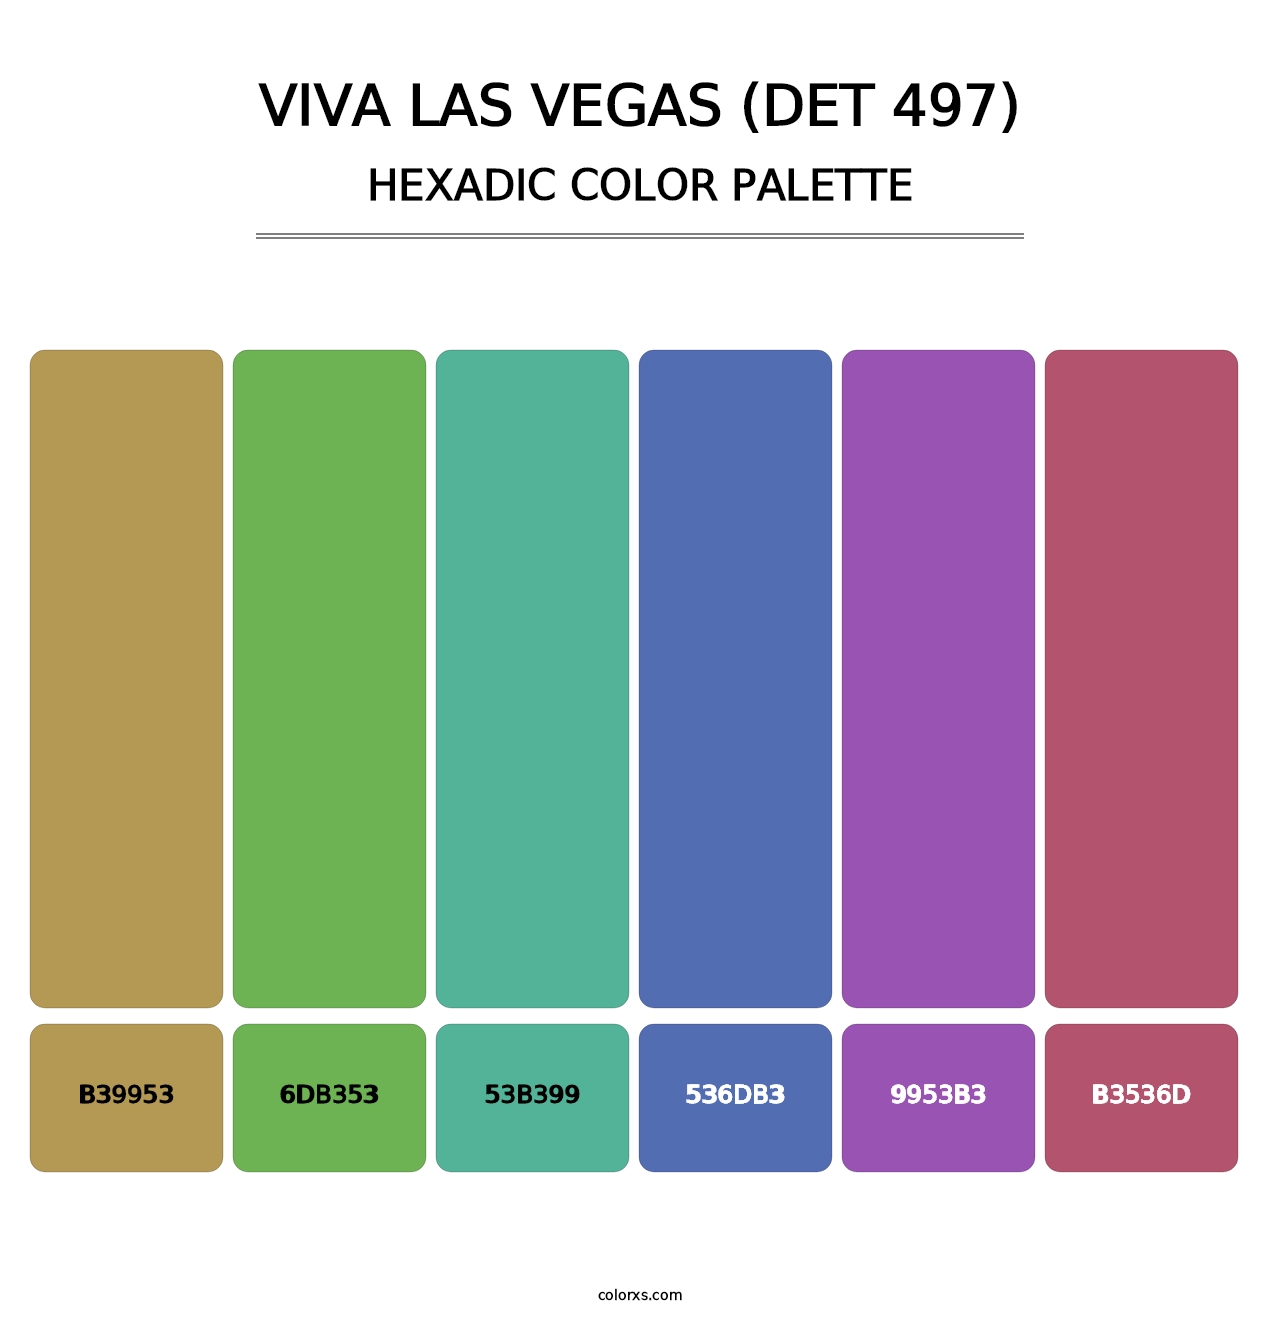 Viva Las Vegas (DET 497) - Hexadic Color Palette